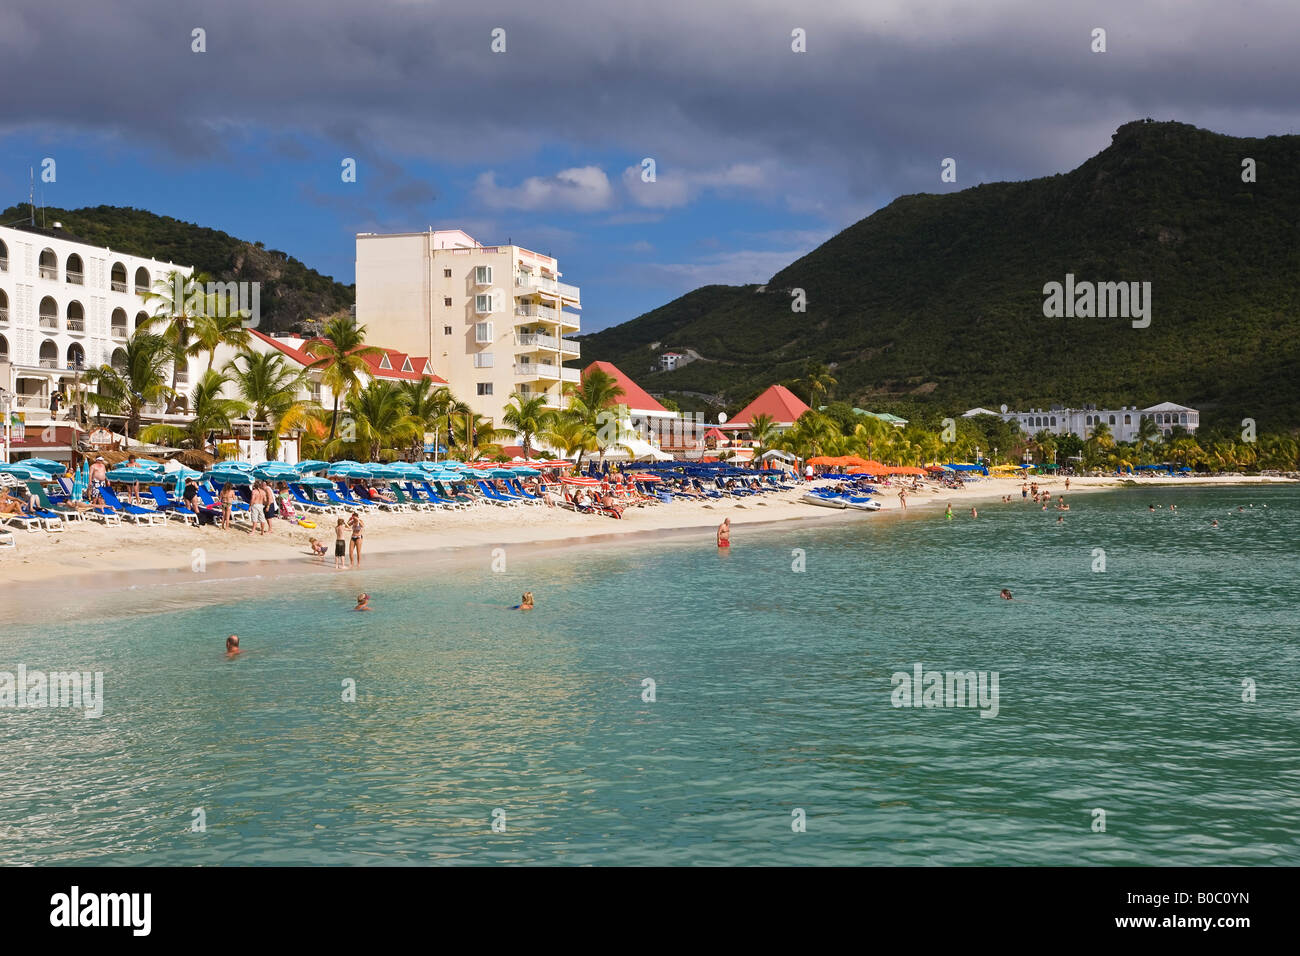 Antillas, Caribe, Antillas, St Martin, Sint Maarten, Antillas Neerlandesas, la capital holandesa de Philipsburg Foto de stock